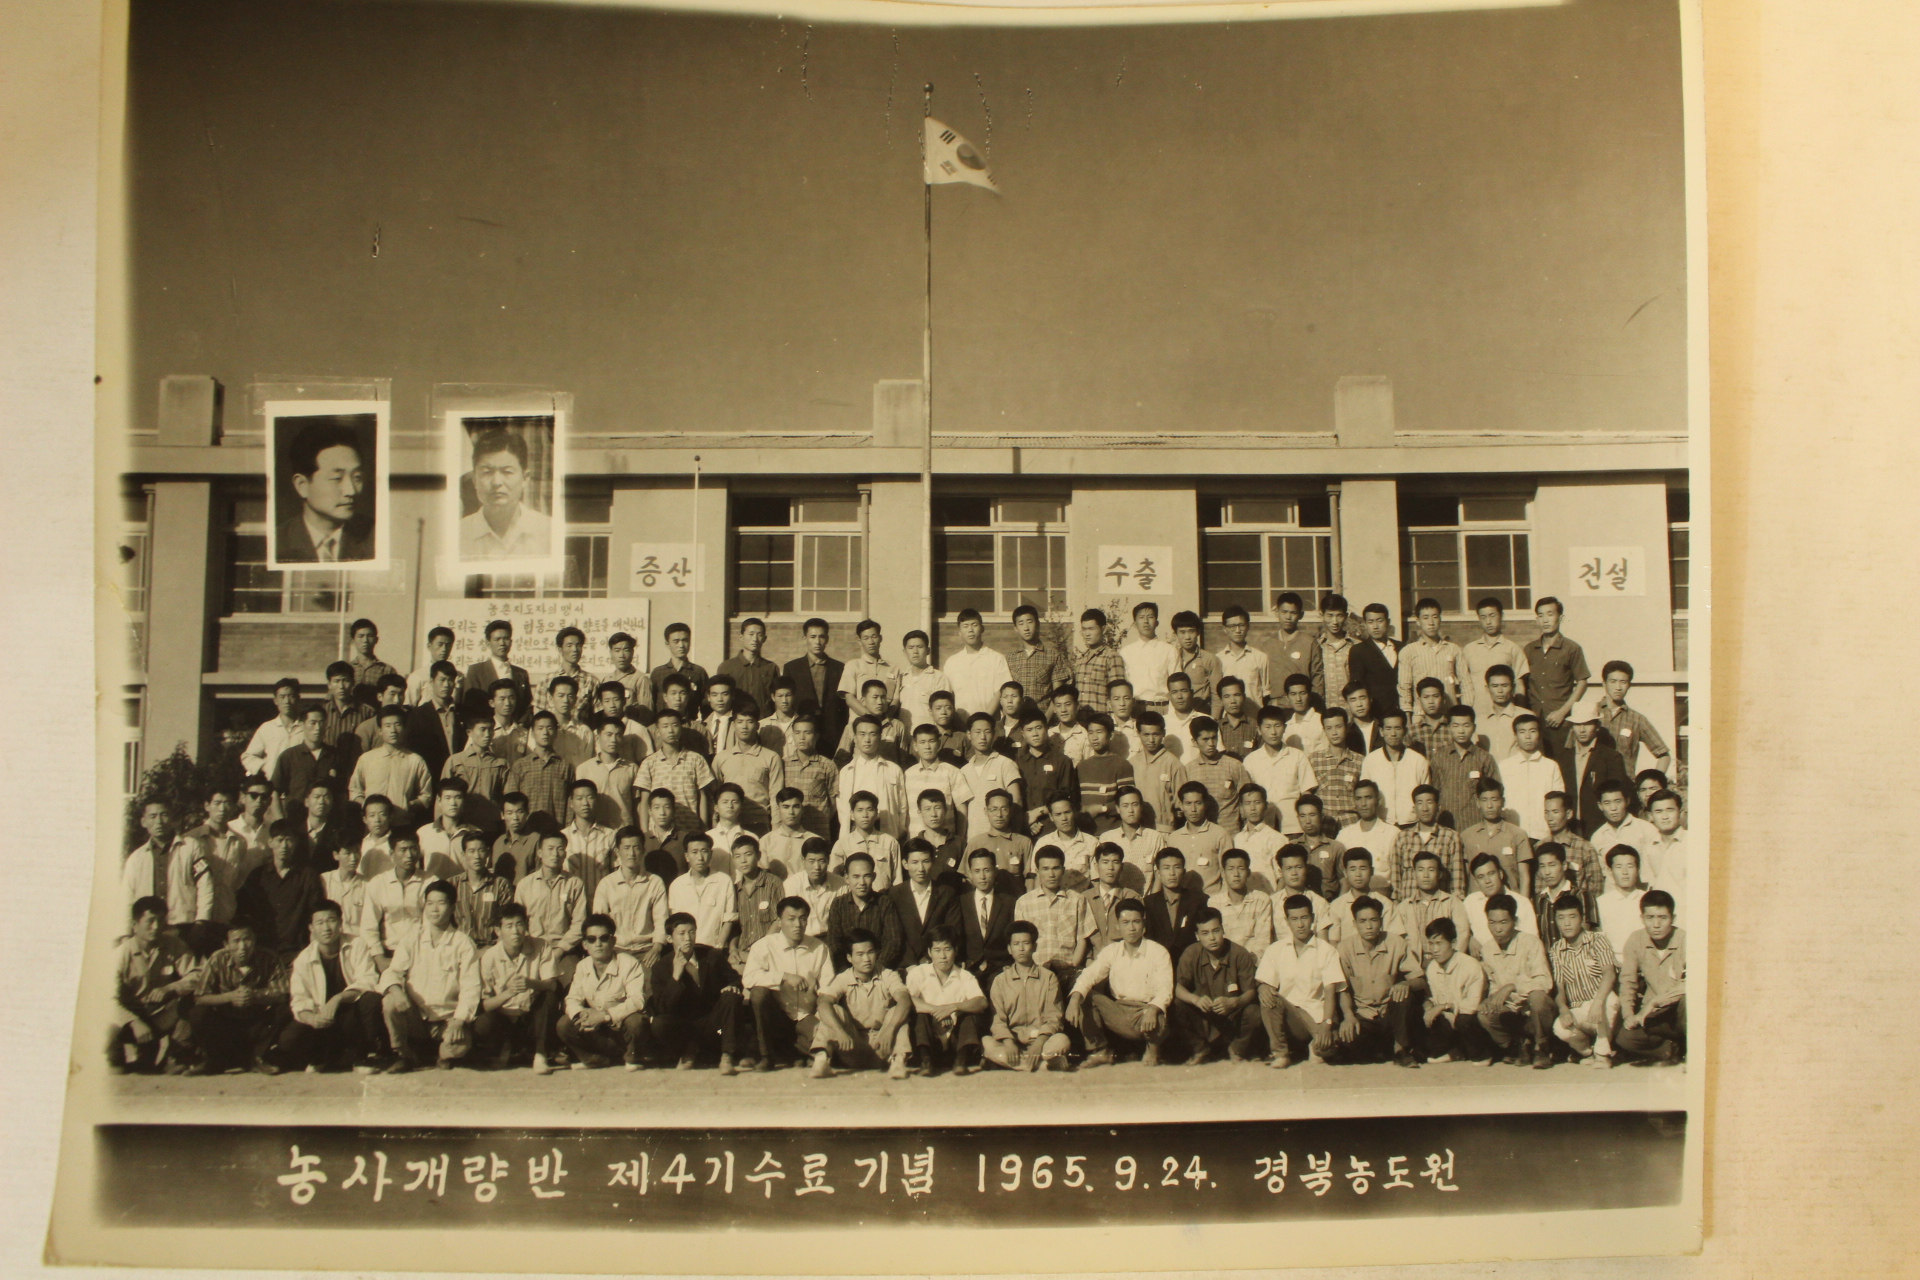 1963년,65년,66년 경상북도 공무원,생활개선반,농사개량반 등 사진일괄 24장(추가사진)